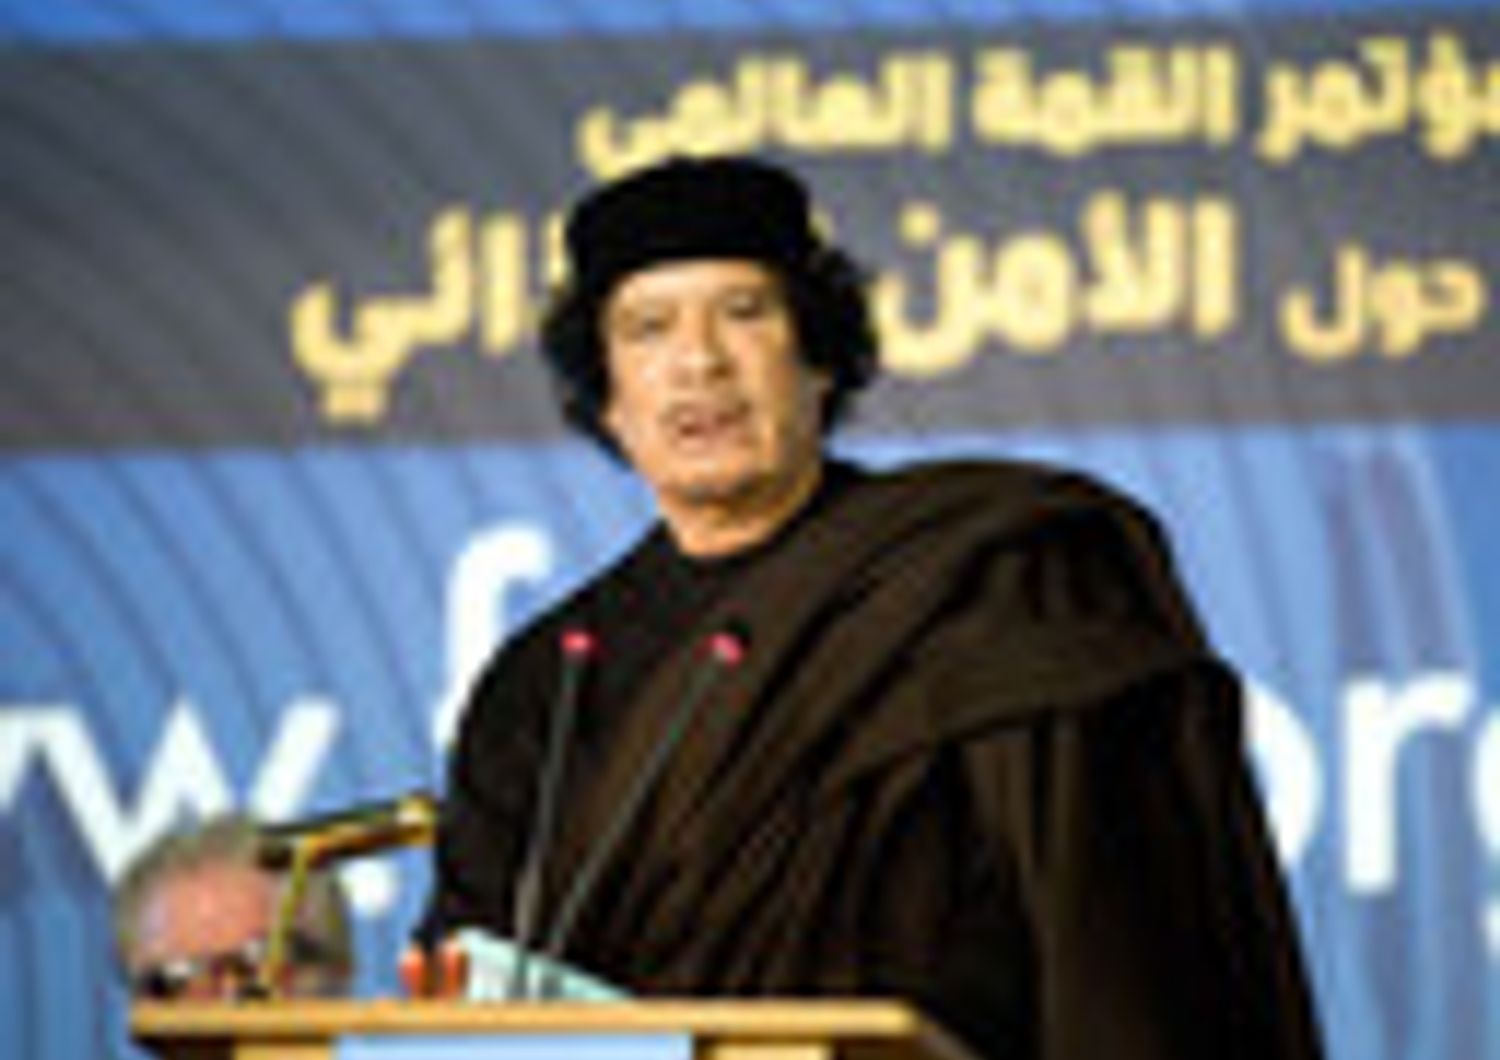 LIBIA: GLI ANALISTI, "RIDICOLA" L'IPOTESI DEL COMPLOTTO COLONIALE